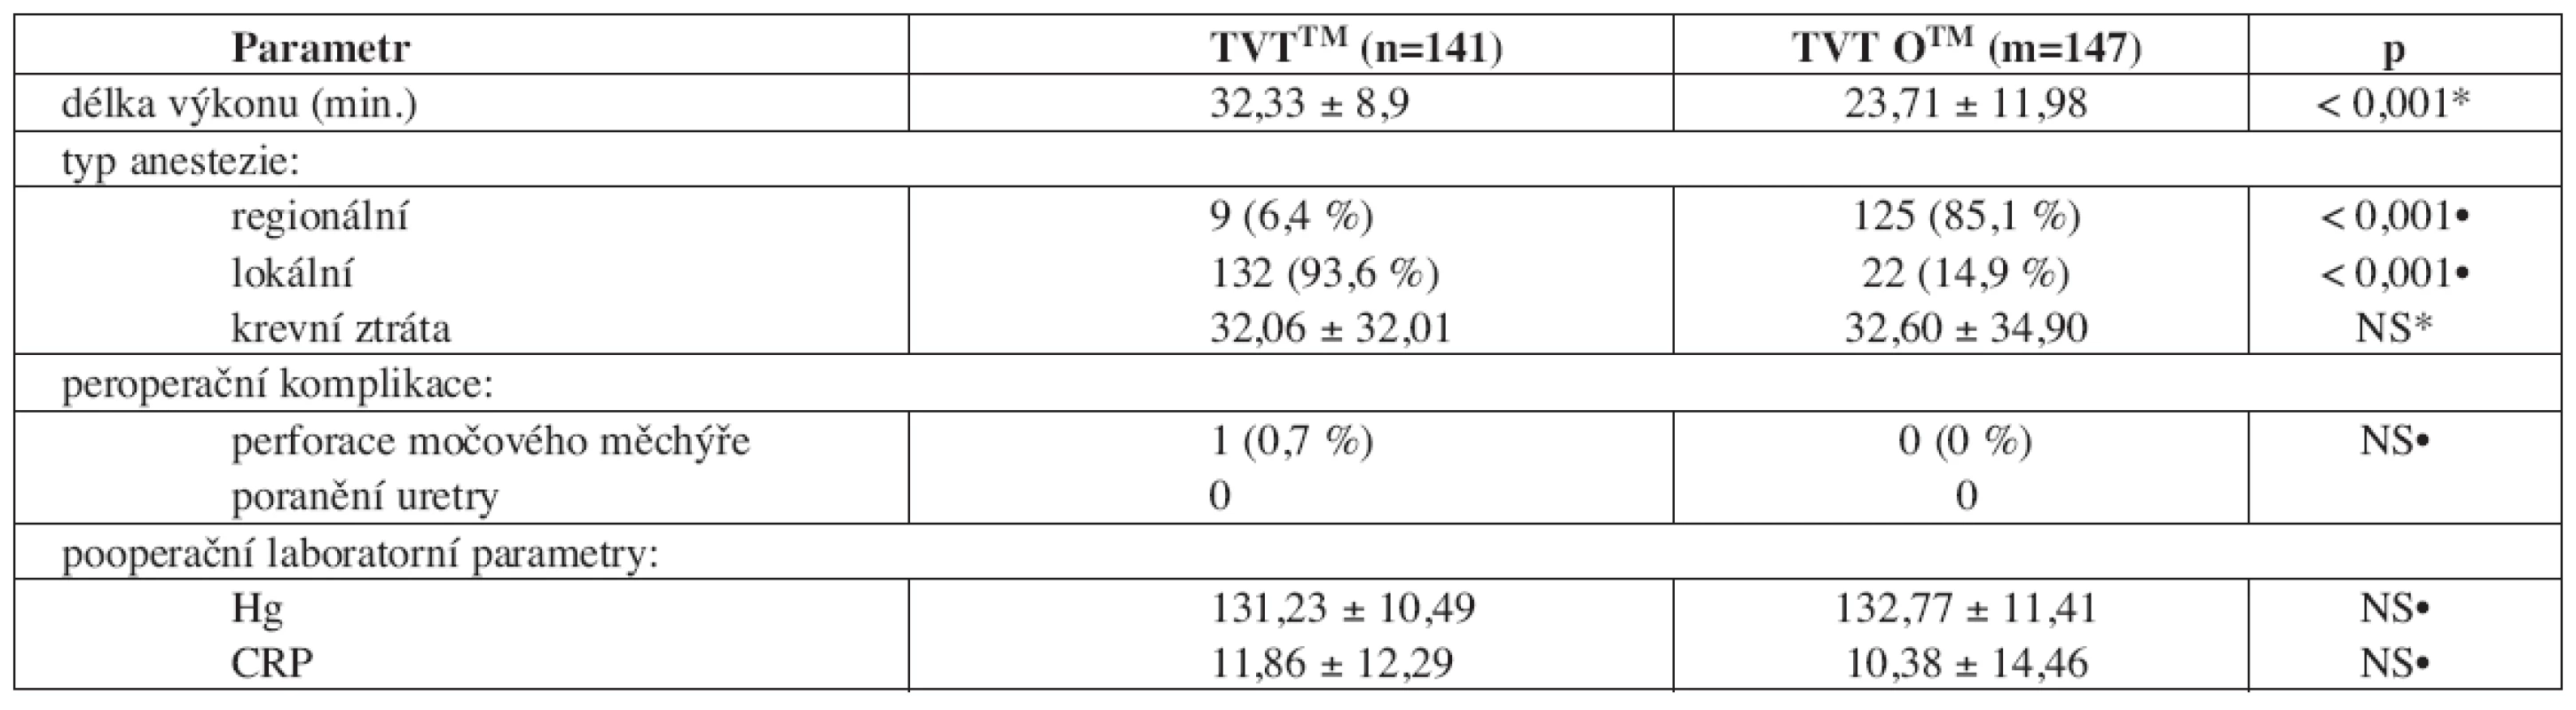 Vybrané operační a časné pooperační parametry v souboru žen s TVTTM/TVT OTM